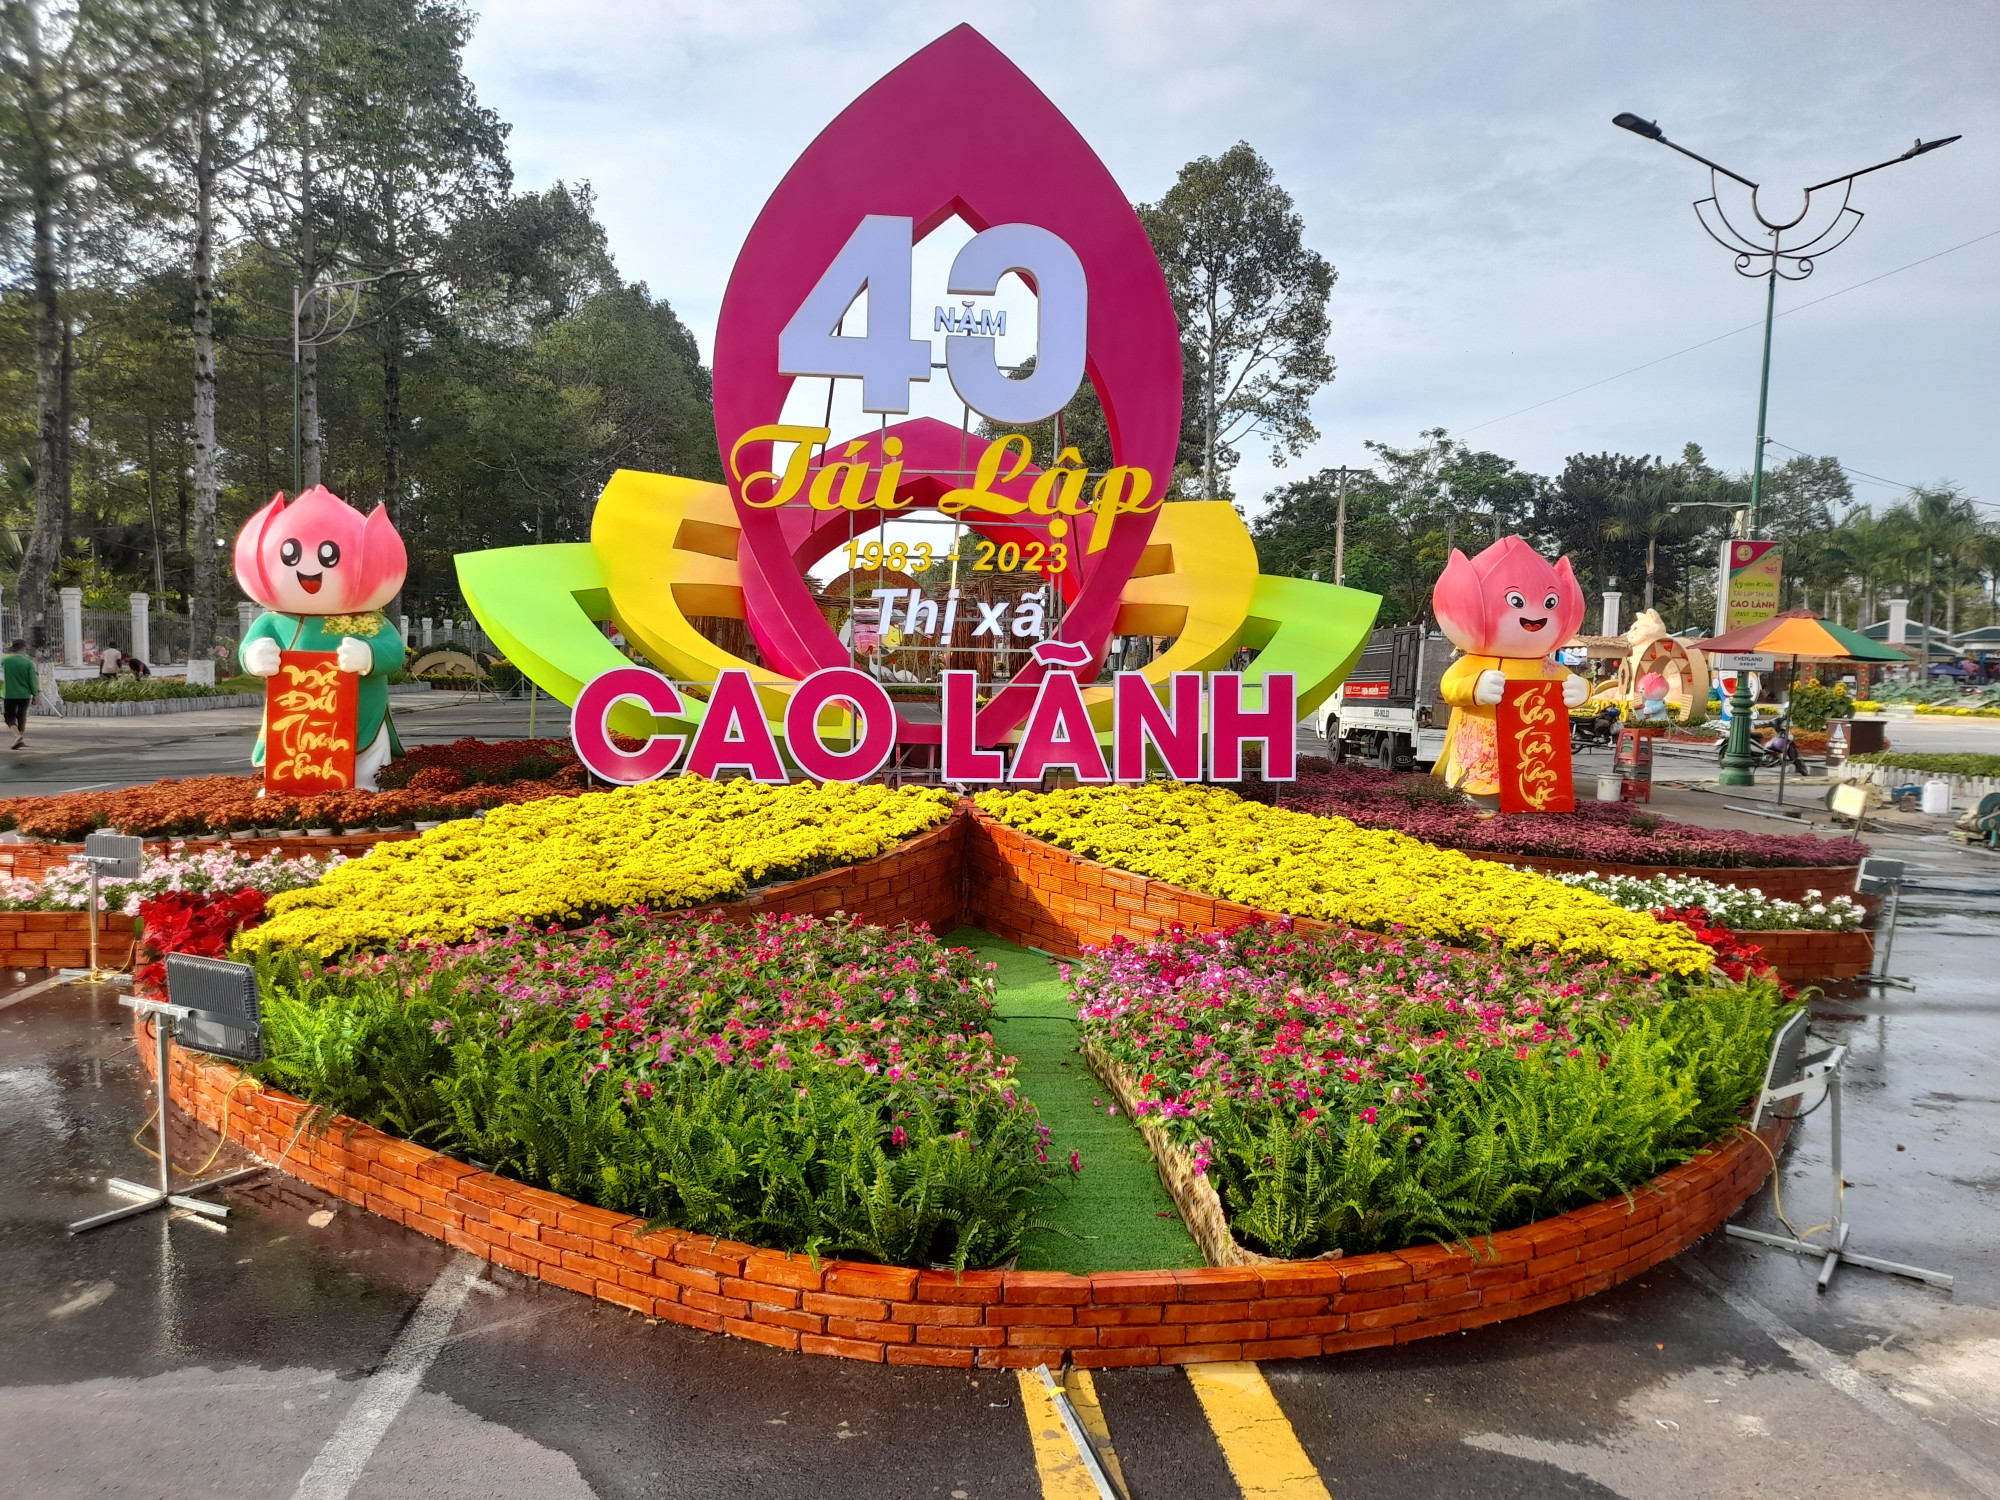 Đây cũng là dịp kỹ niệm 40 năm tái lập Thị xã Cao Lãnh, nay là TP Cao Lãnh ( 23/2/1983 - 23/2/2023